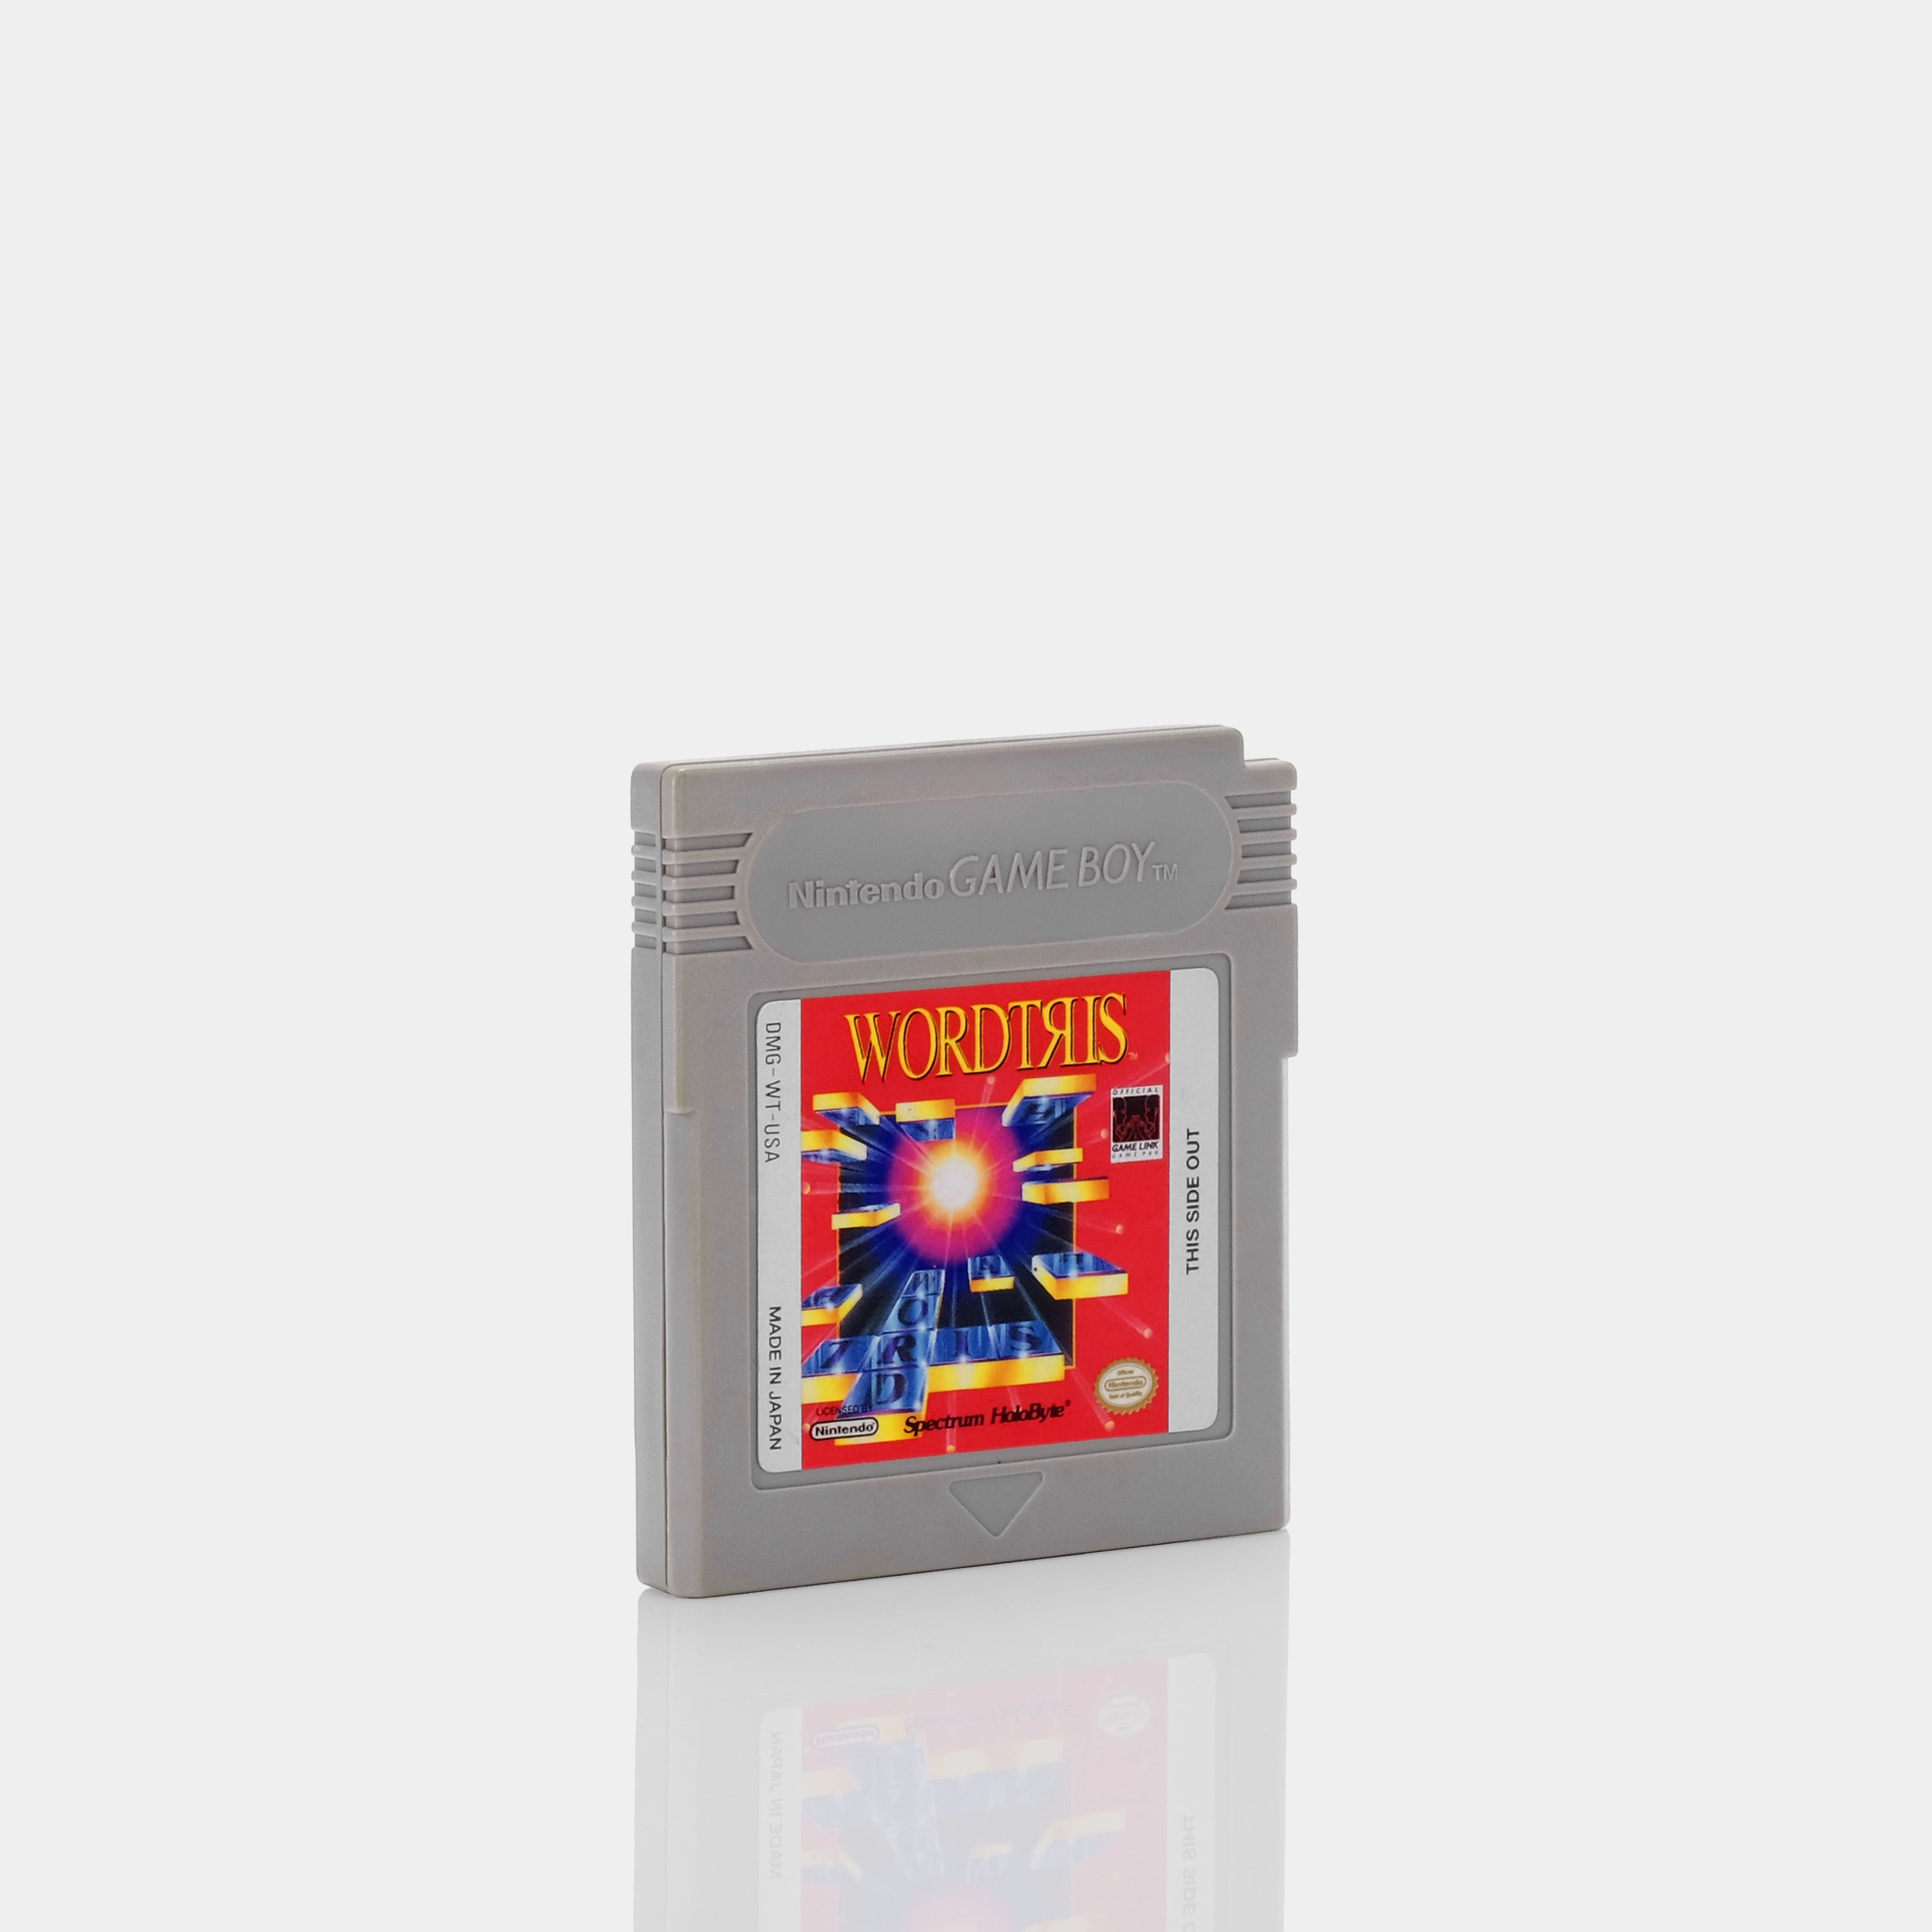 Wordtris Game Boy Game